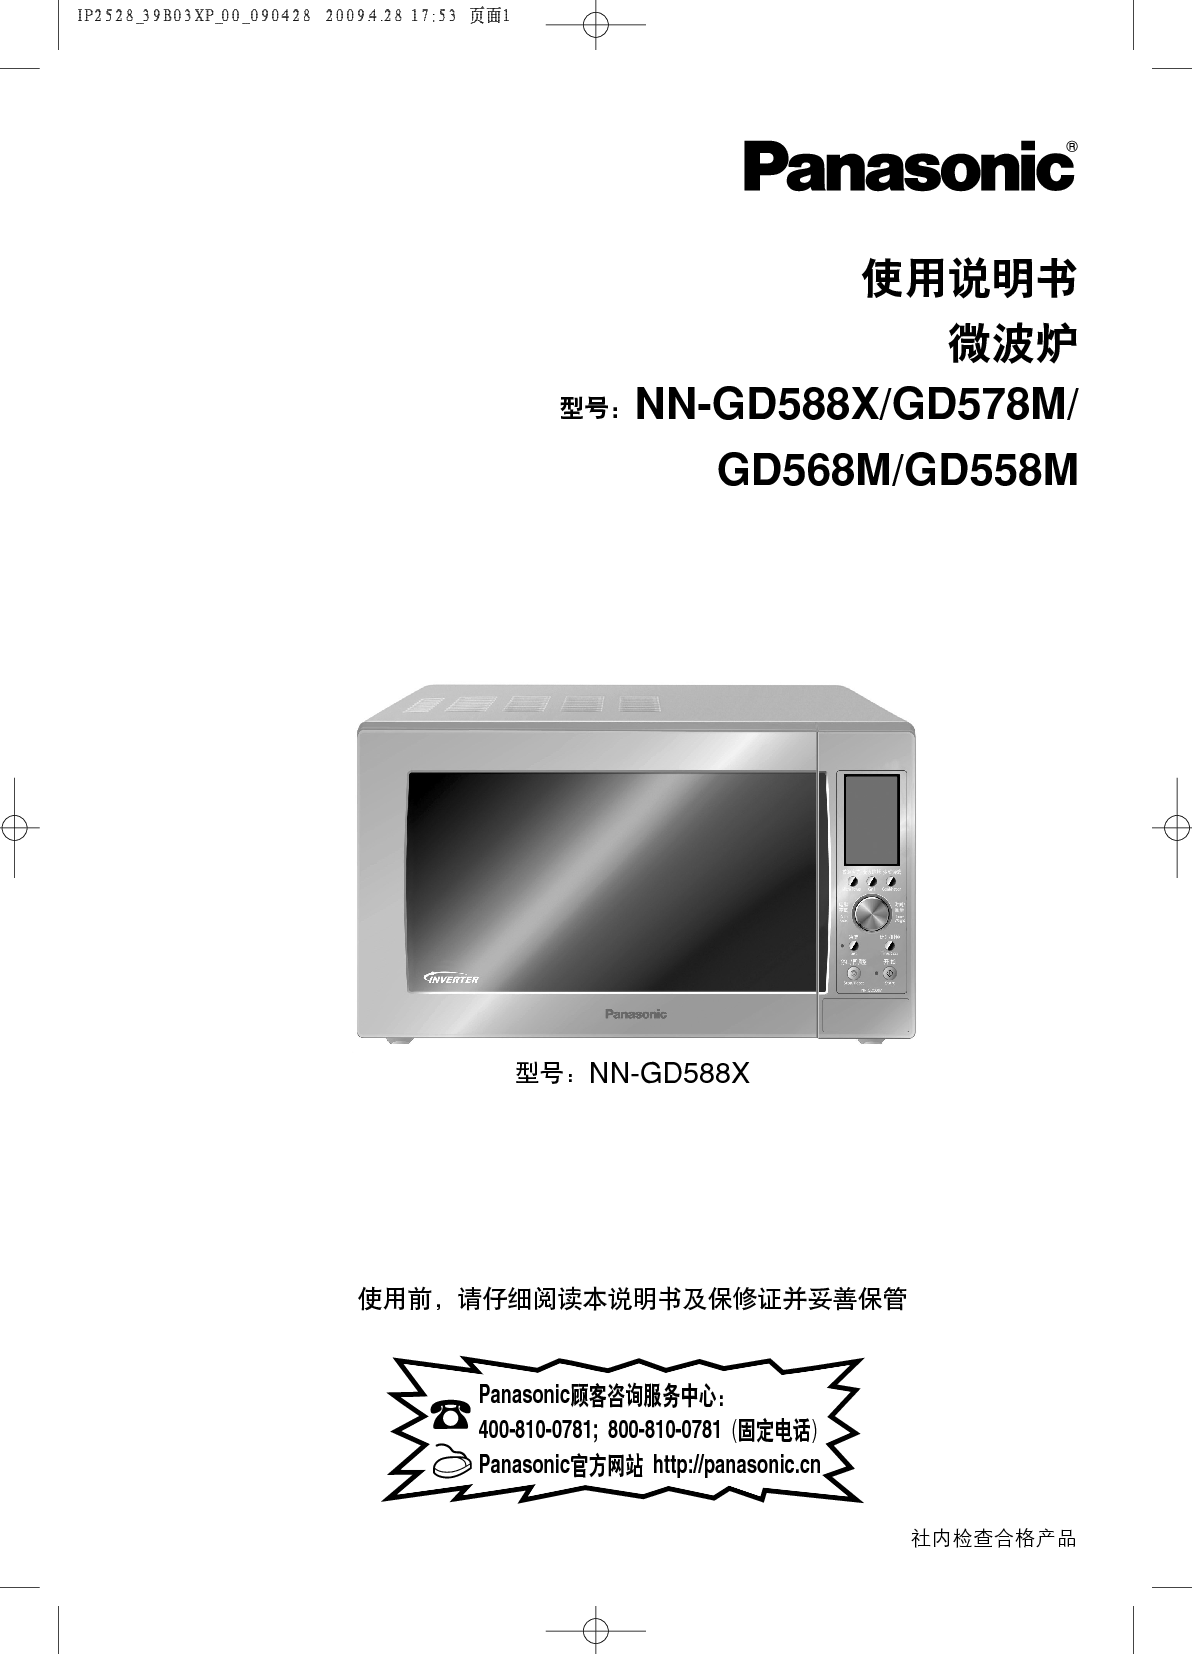 松下 Panasonic NN-GD558M 说明书 封面